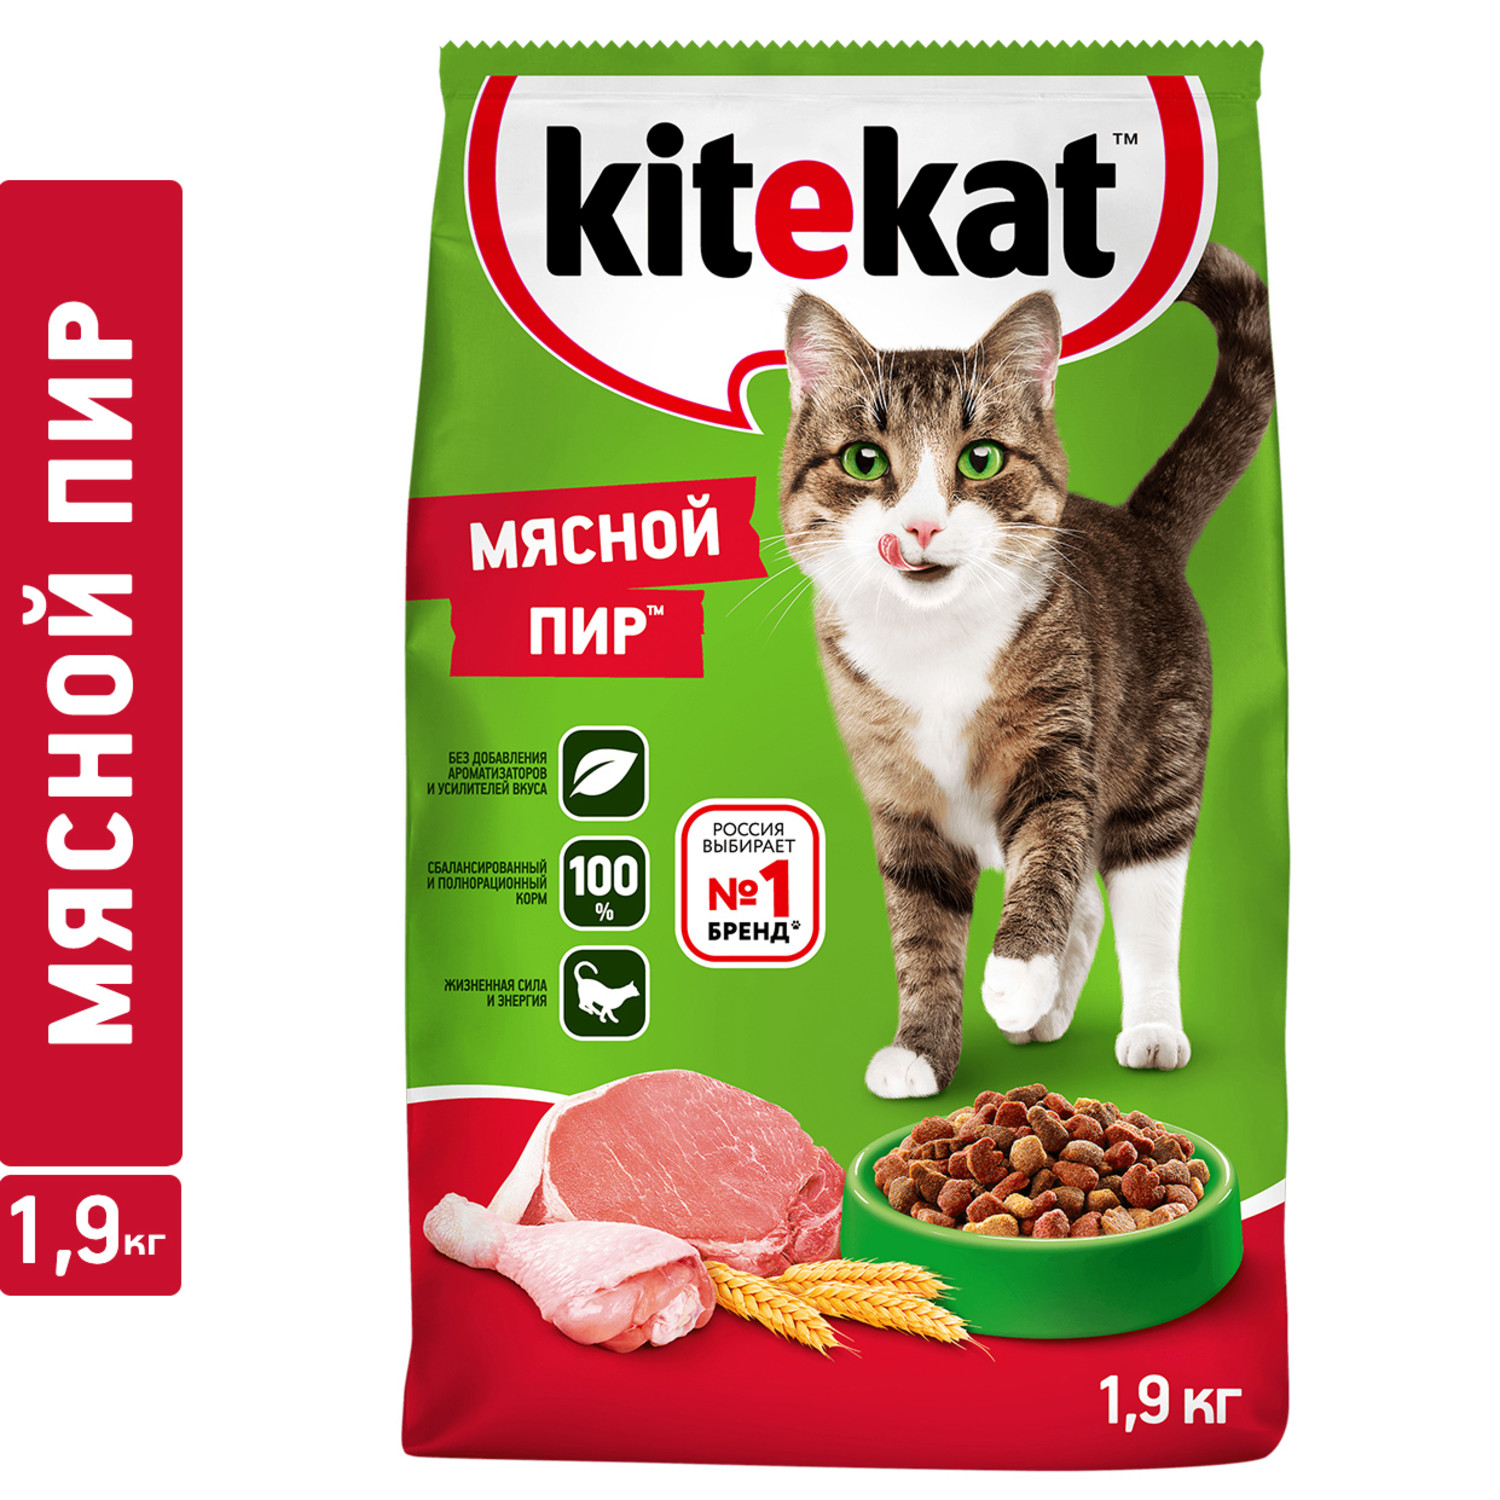 Купить сухой корм для кошек Kitekat мясной пир 19кг цены в Москве